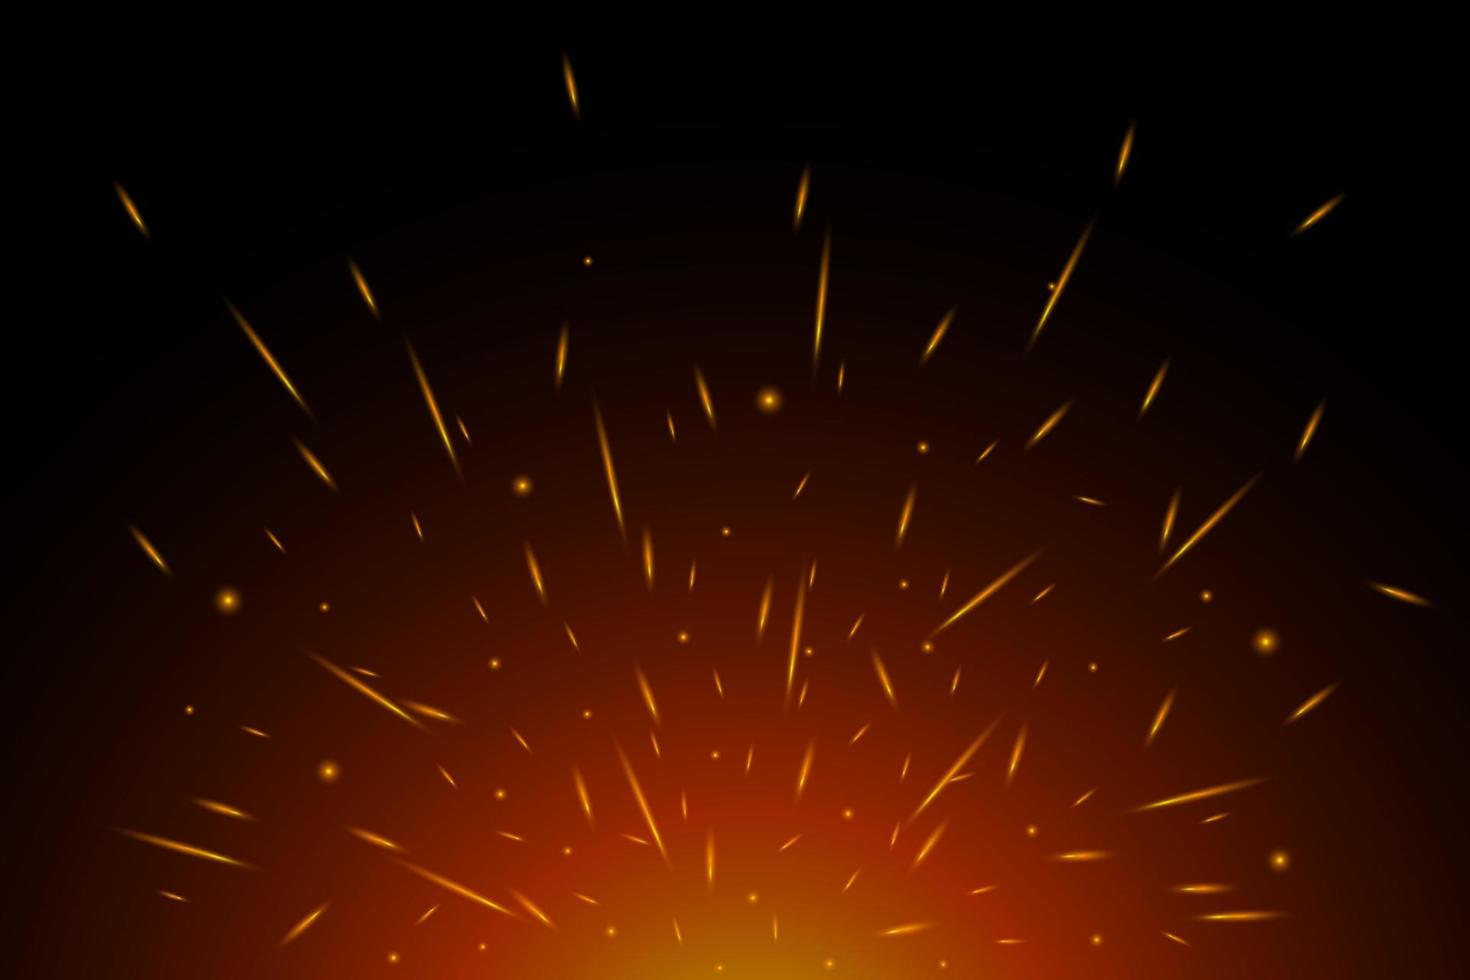 eldgnistor i luften över mörk natt. flygande glödande partiklar från eld. flamma ljus effekt på svart bakgrund vektor eps illustration